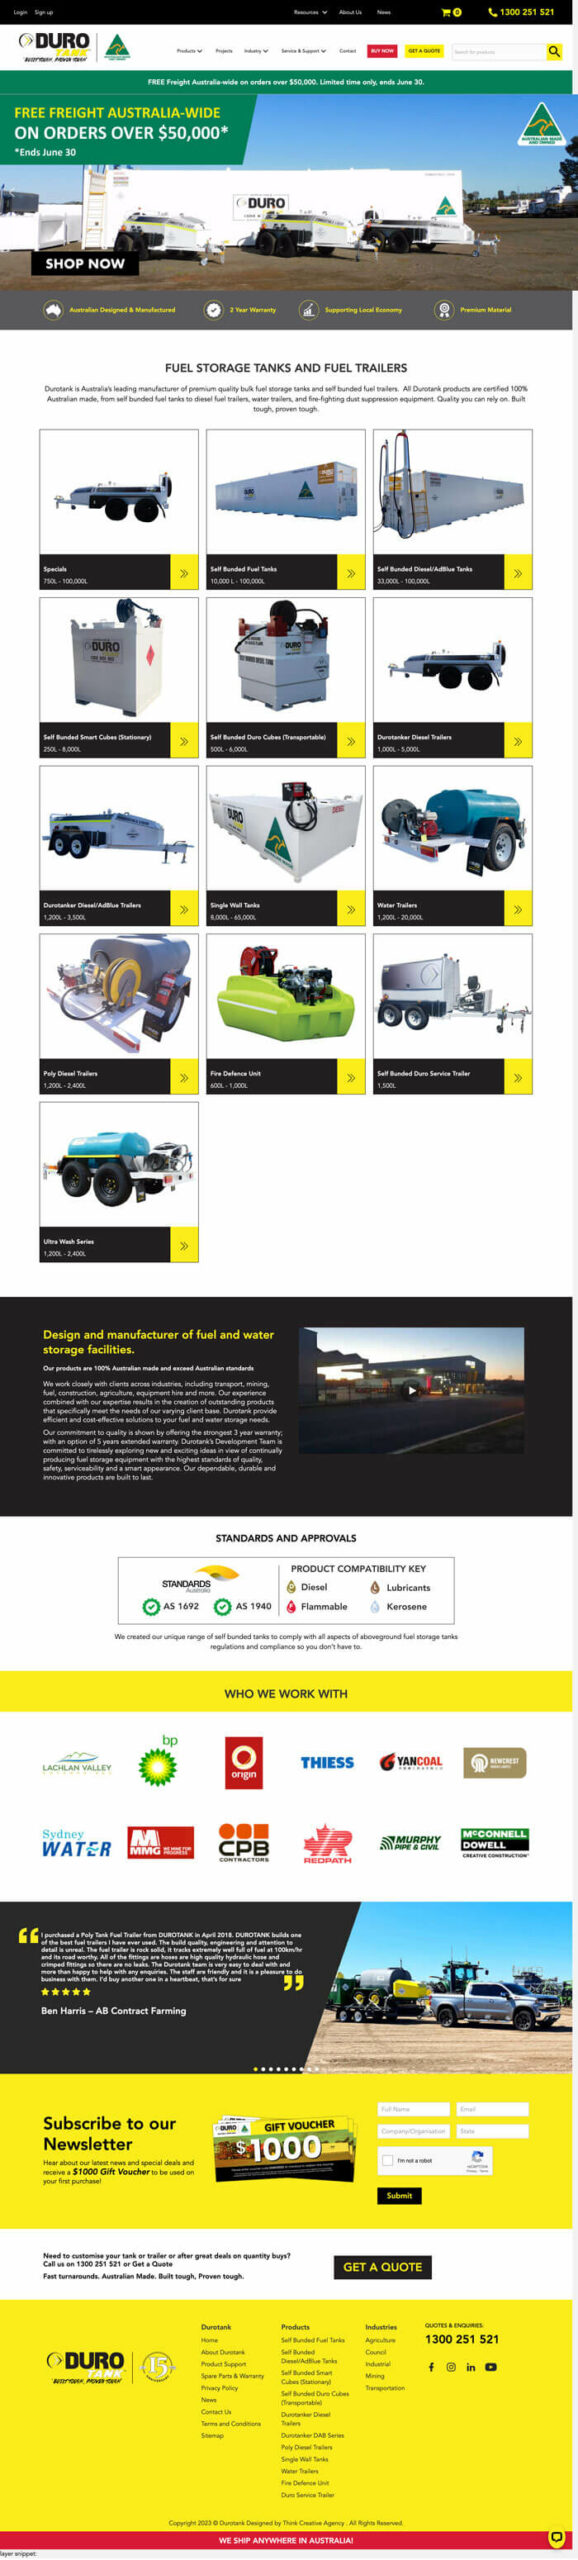 Durotank Web Design Homepage